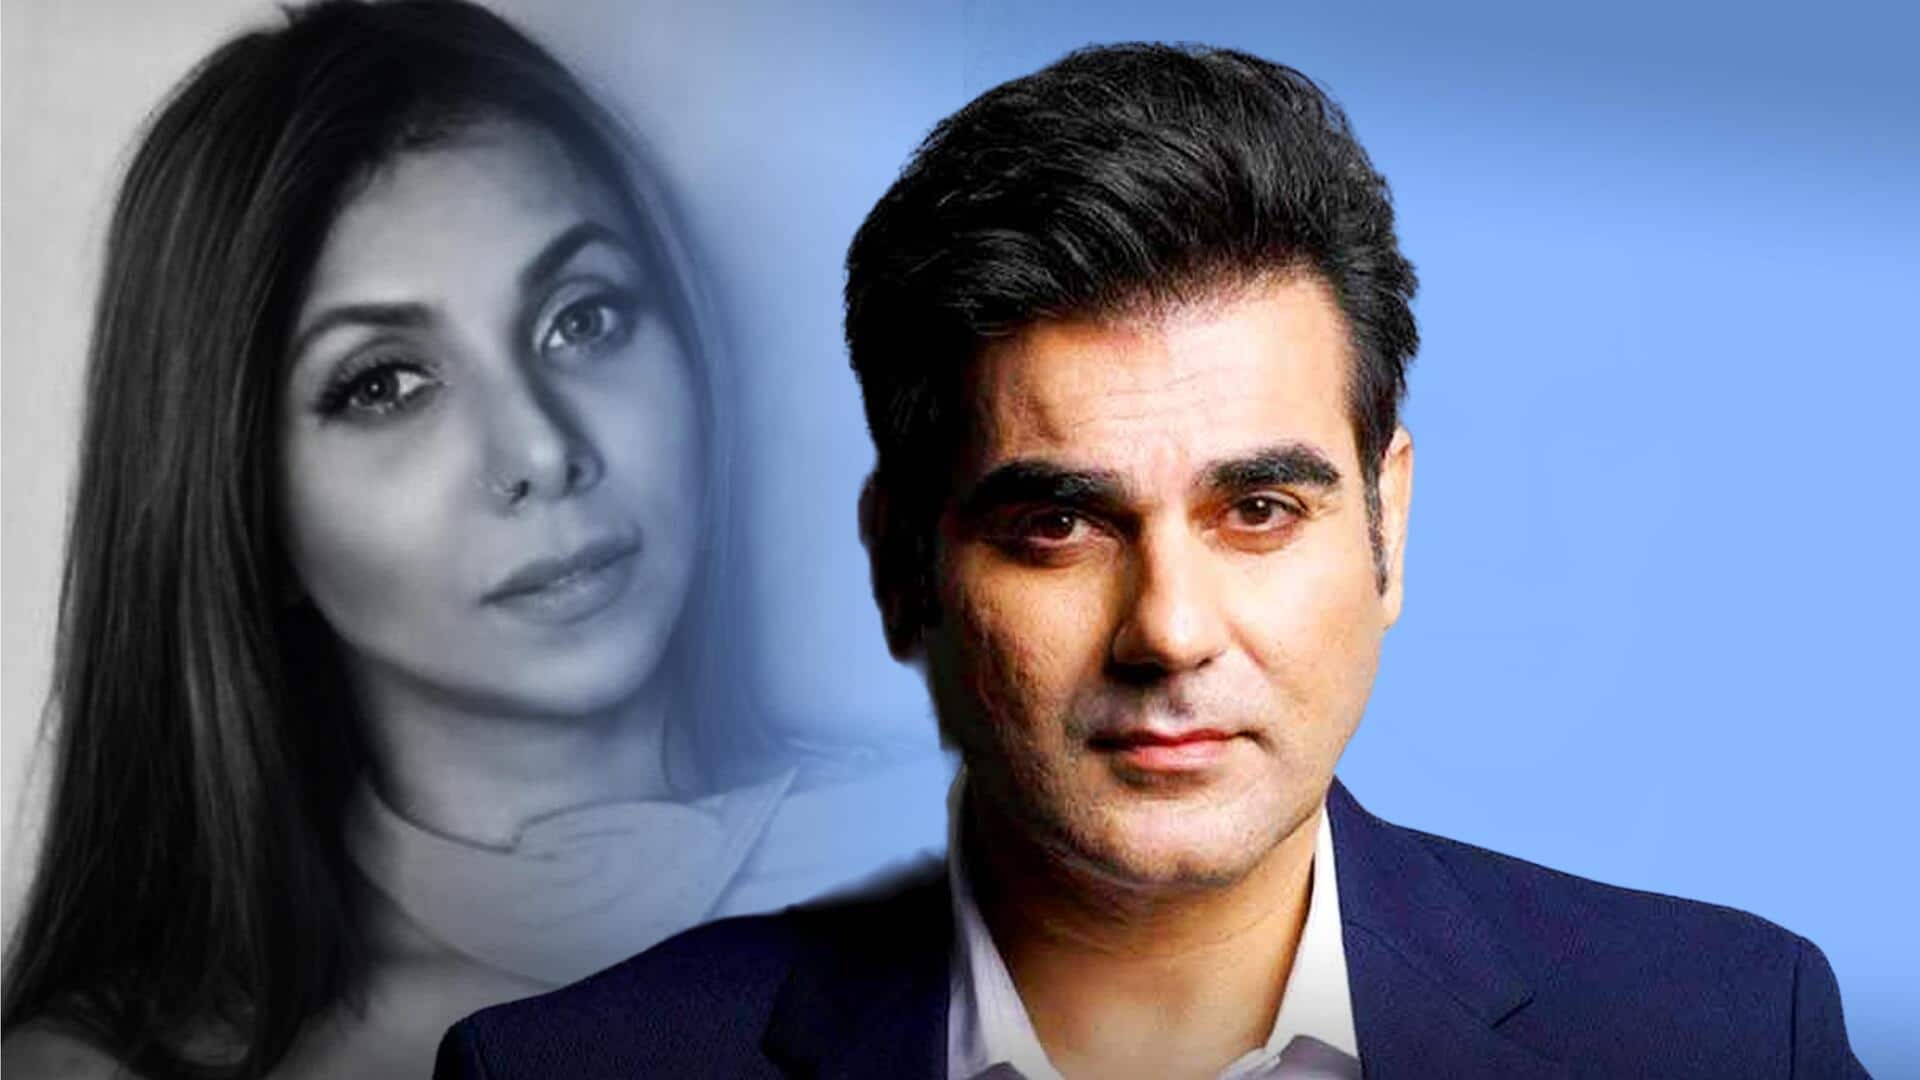 अरबाज खान 24 दिसंबर को शूरा खान संग करेंगे शादी- रिपोर्ट